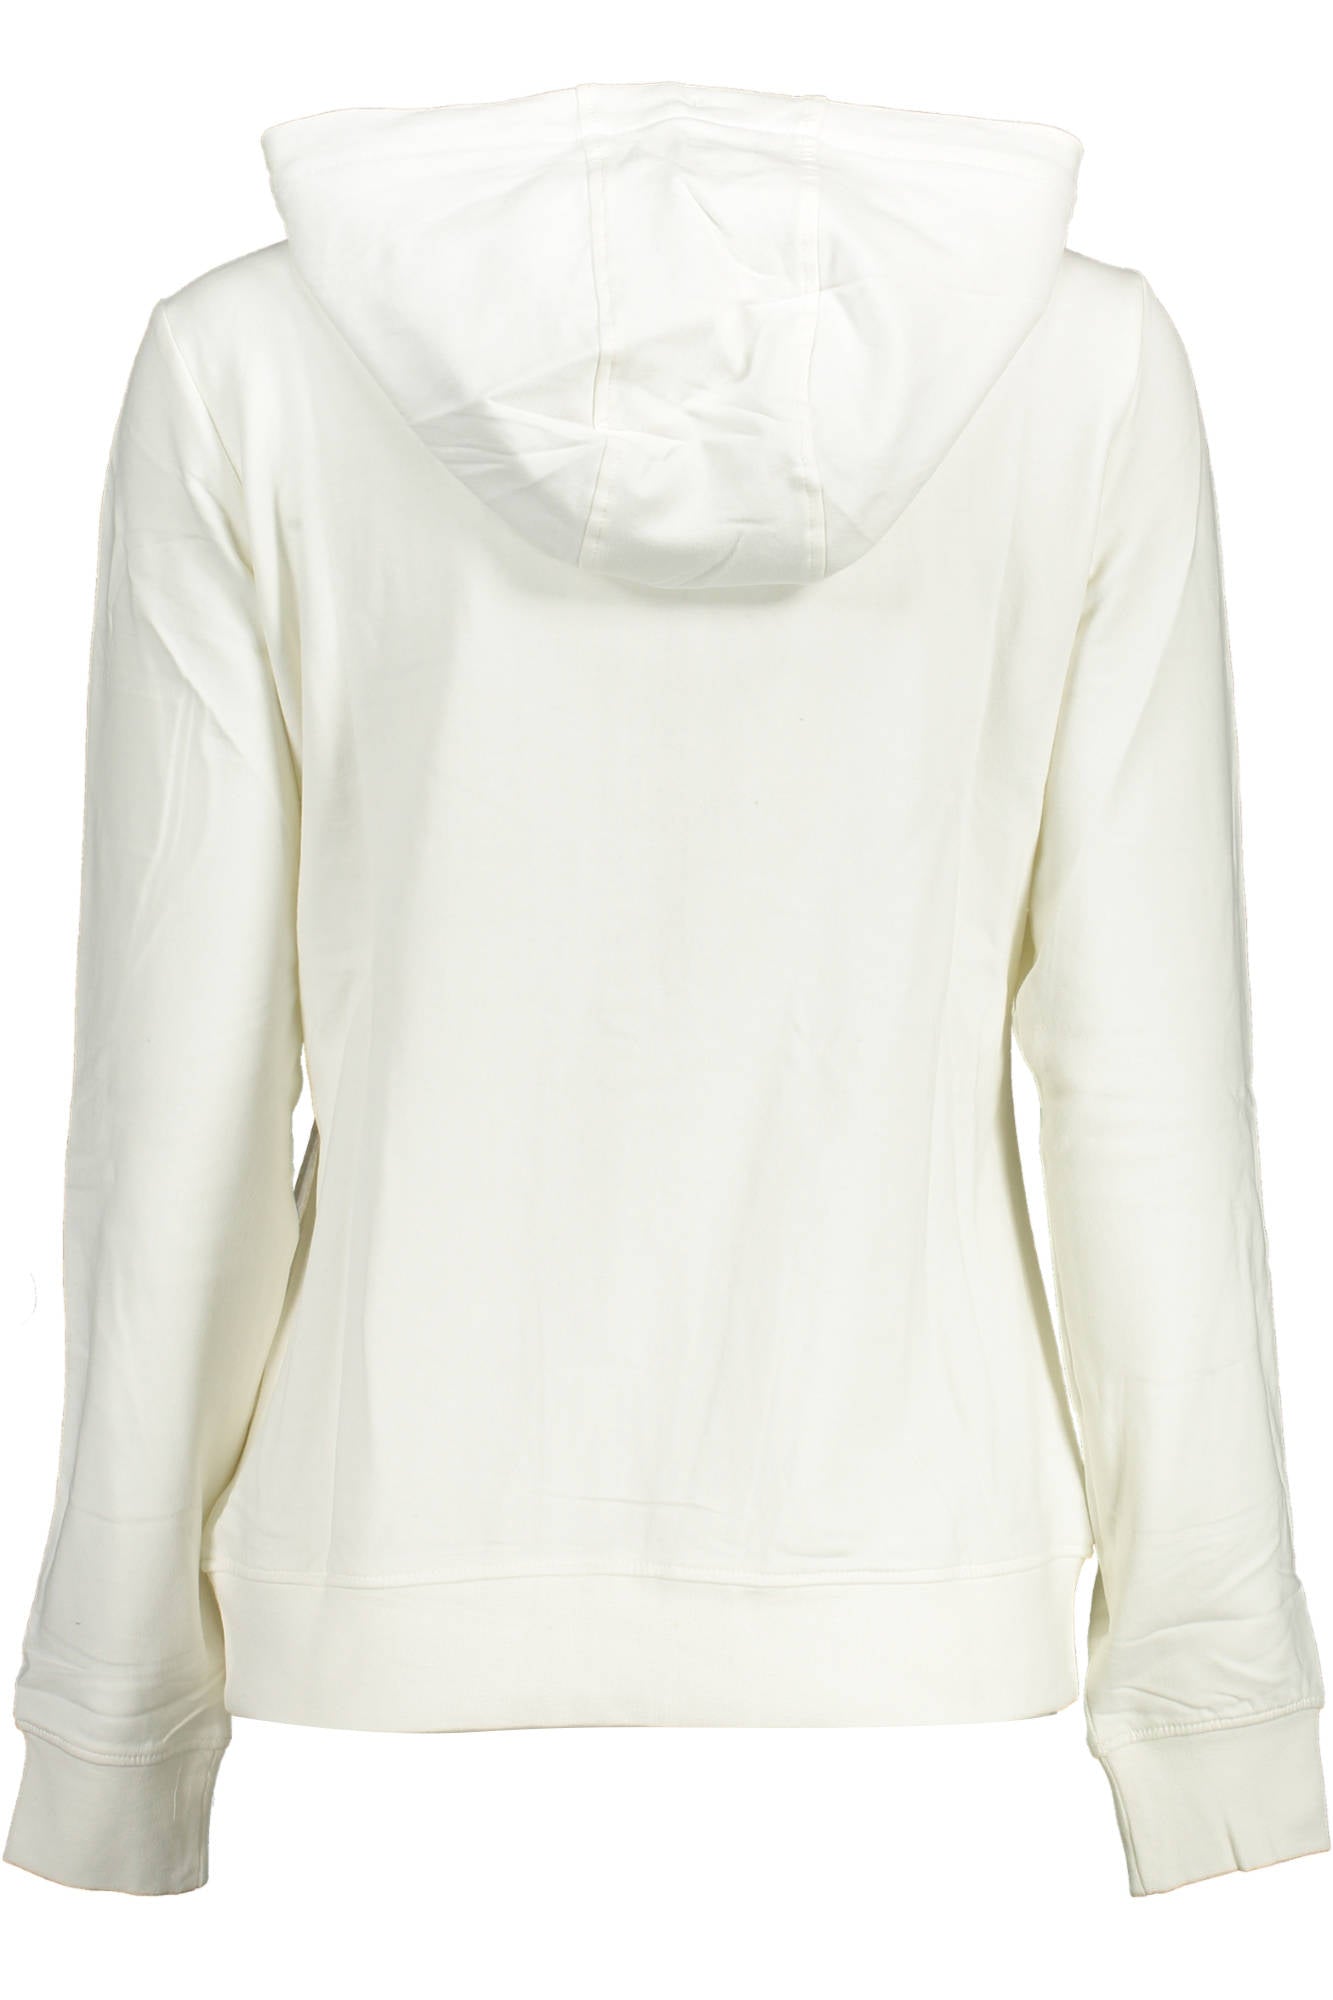 U.S. POLO ASSN. White Sweater - Fizigo